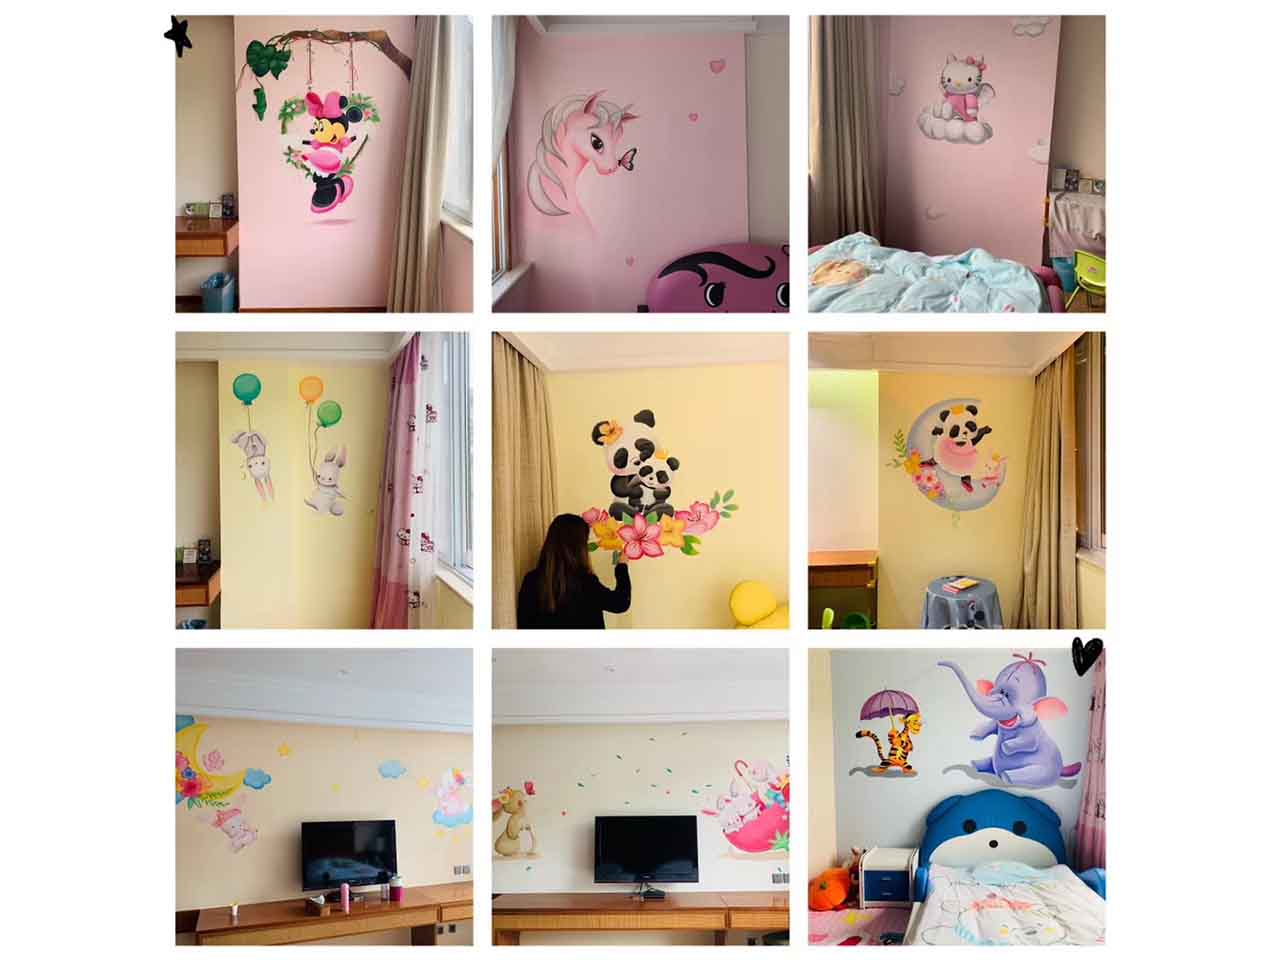 酒店儿童房工装KTV可爱卡通墙绘壁画彩绘涂鸦手绘成都澜泉文化